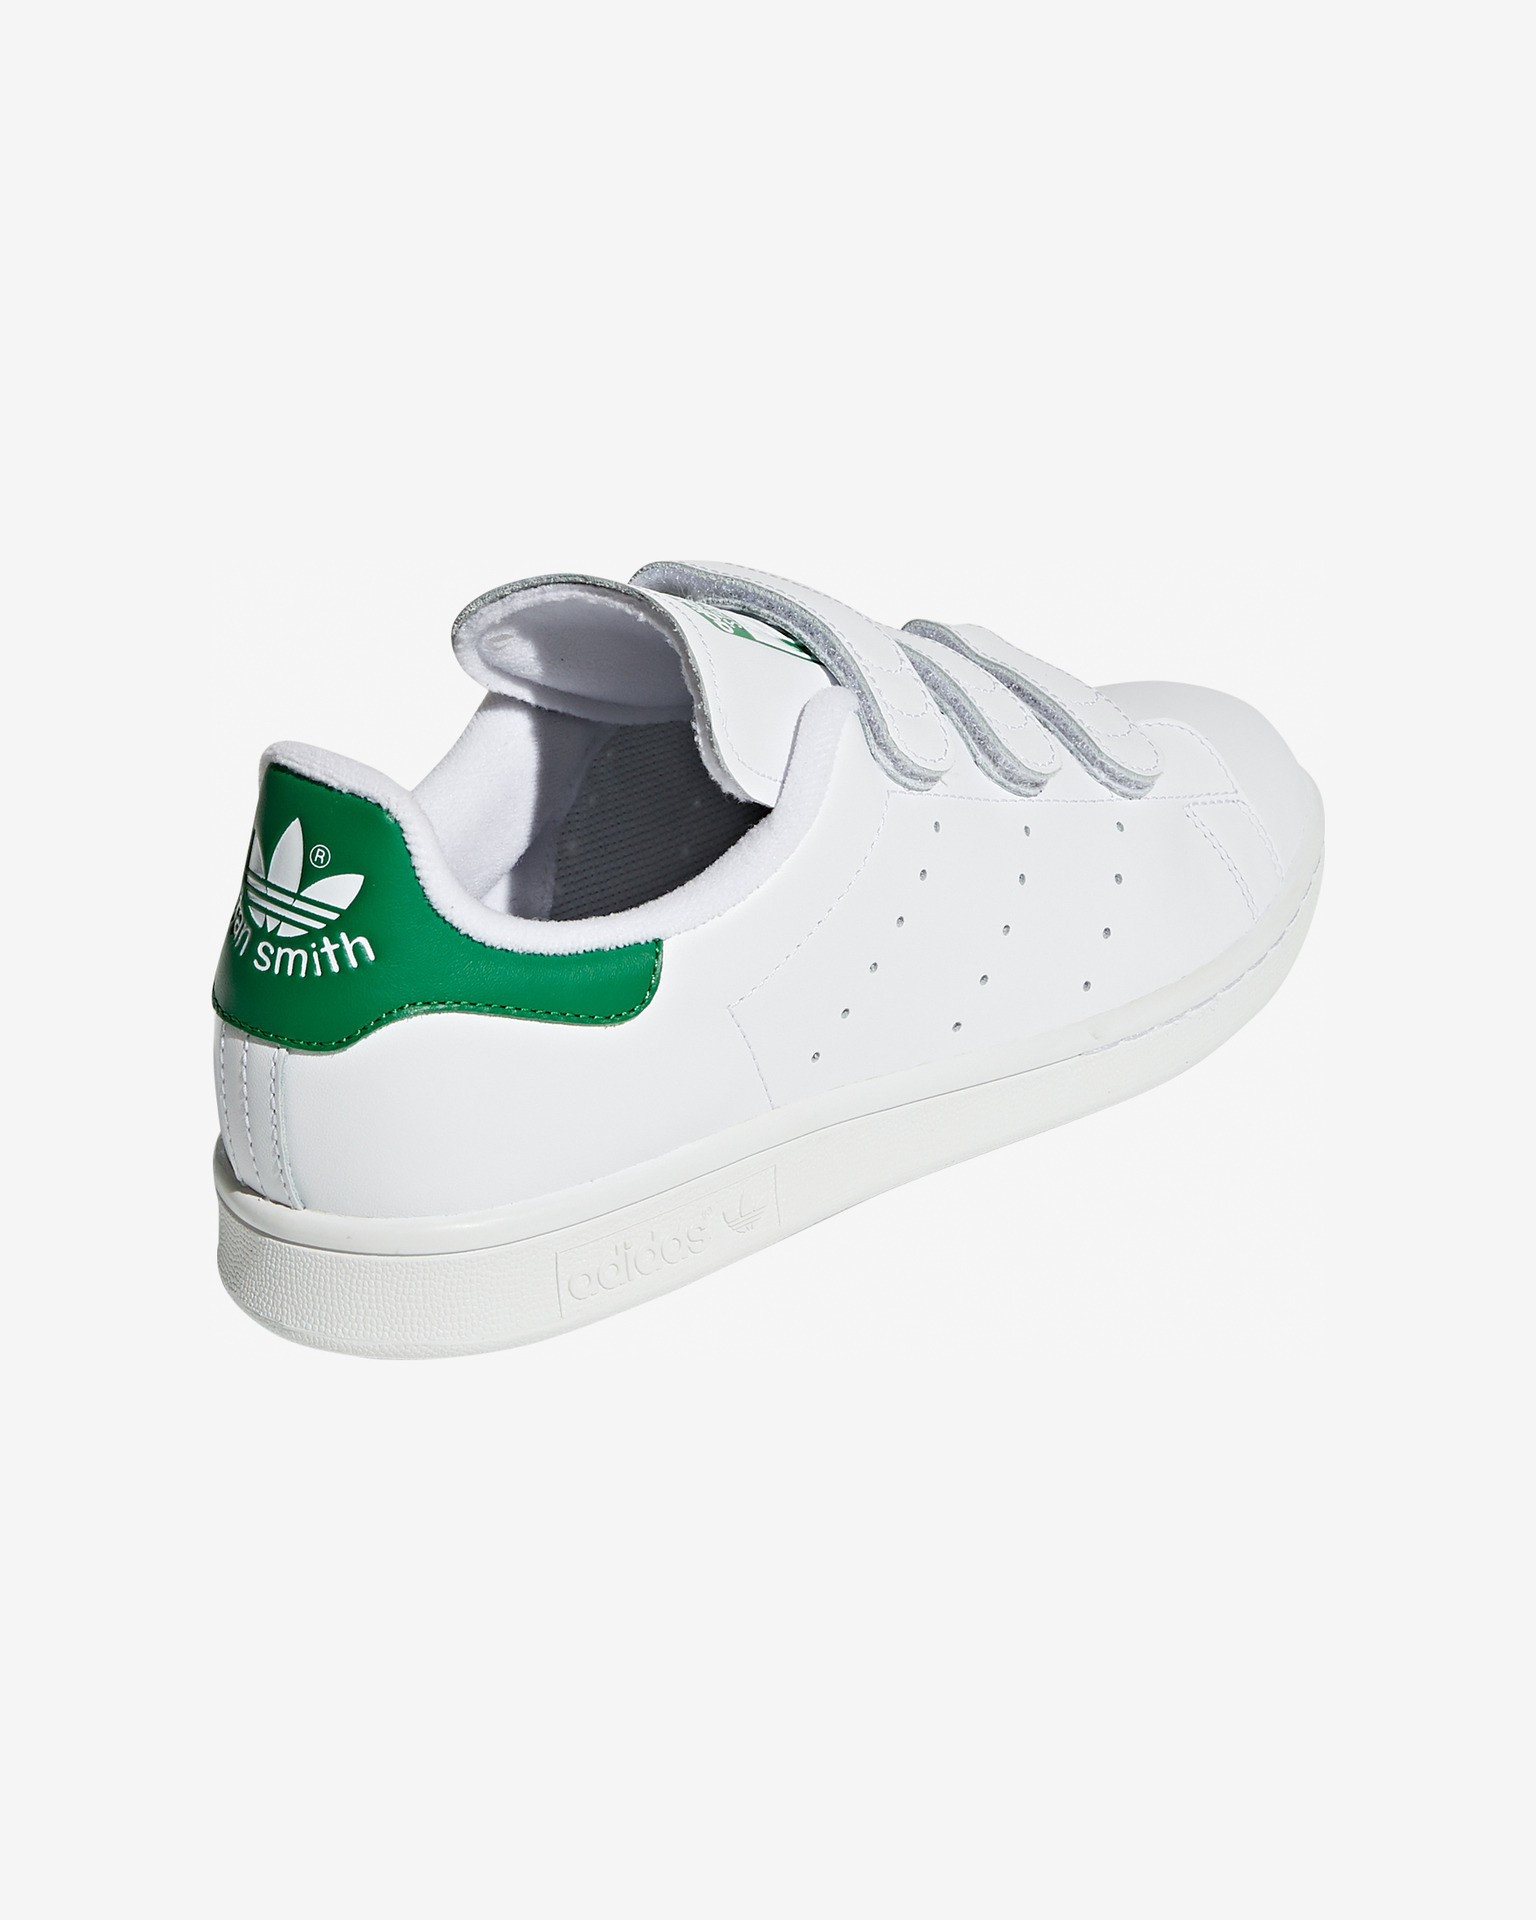 - Smith adidas Originals Sneakers Stan